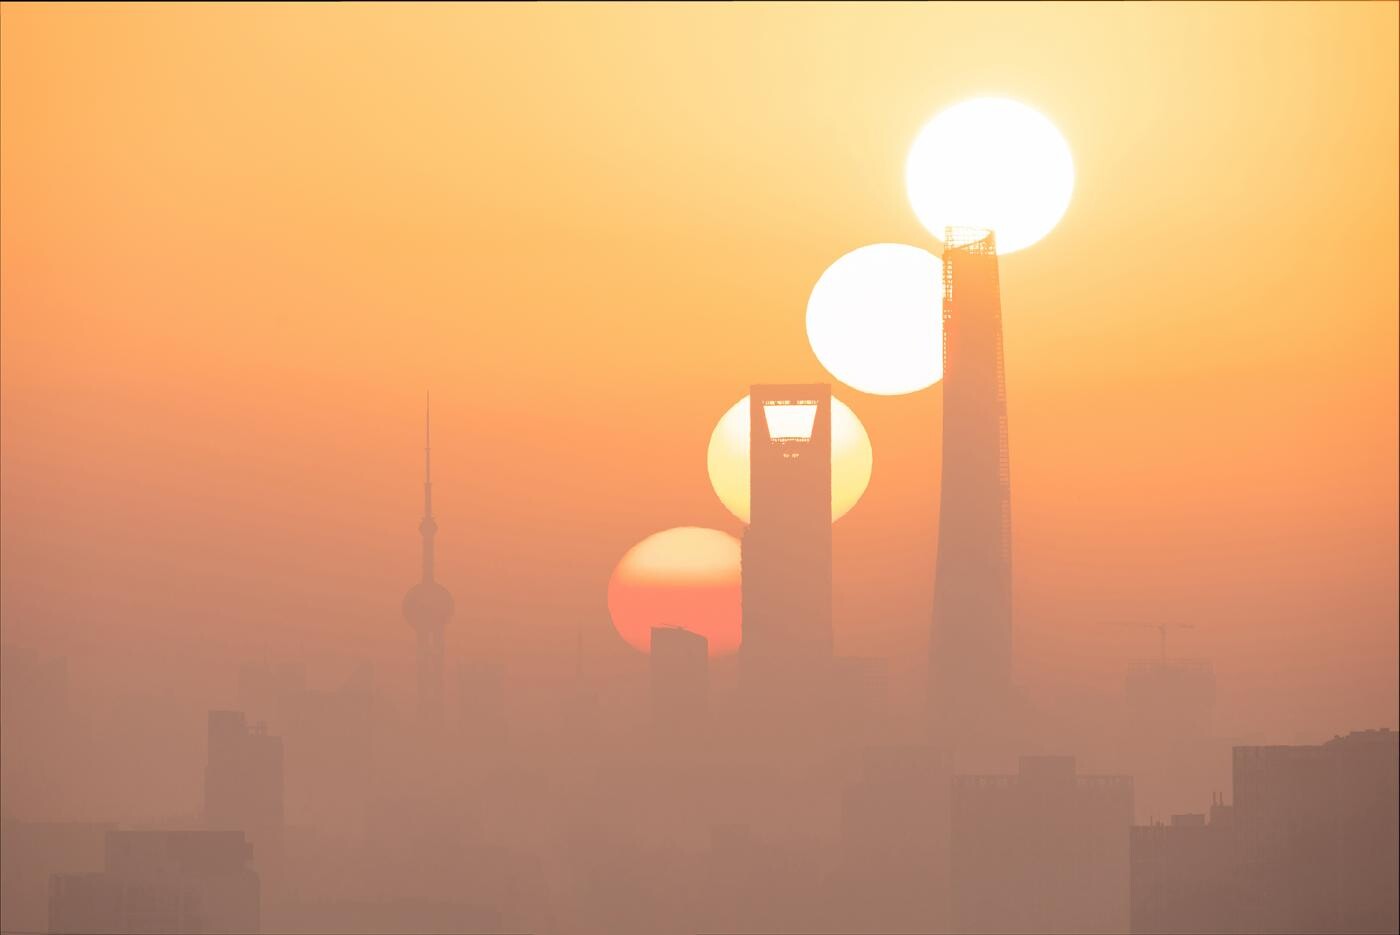 Финалист в категории Наше Солнце, 2021. Восход в волшебном городе. Шанхай, Китай. Автор Цзяцзюнь Хуа